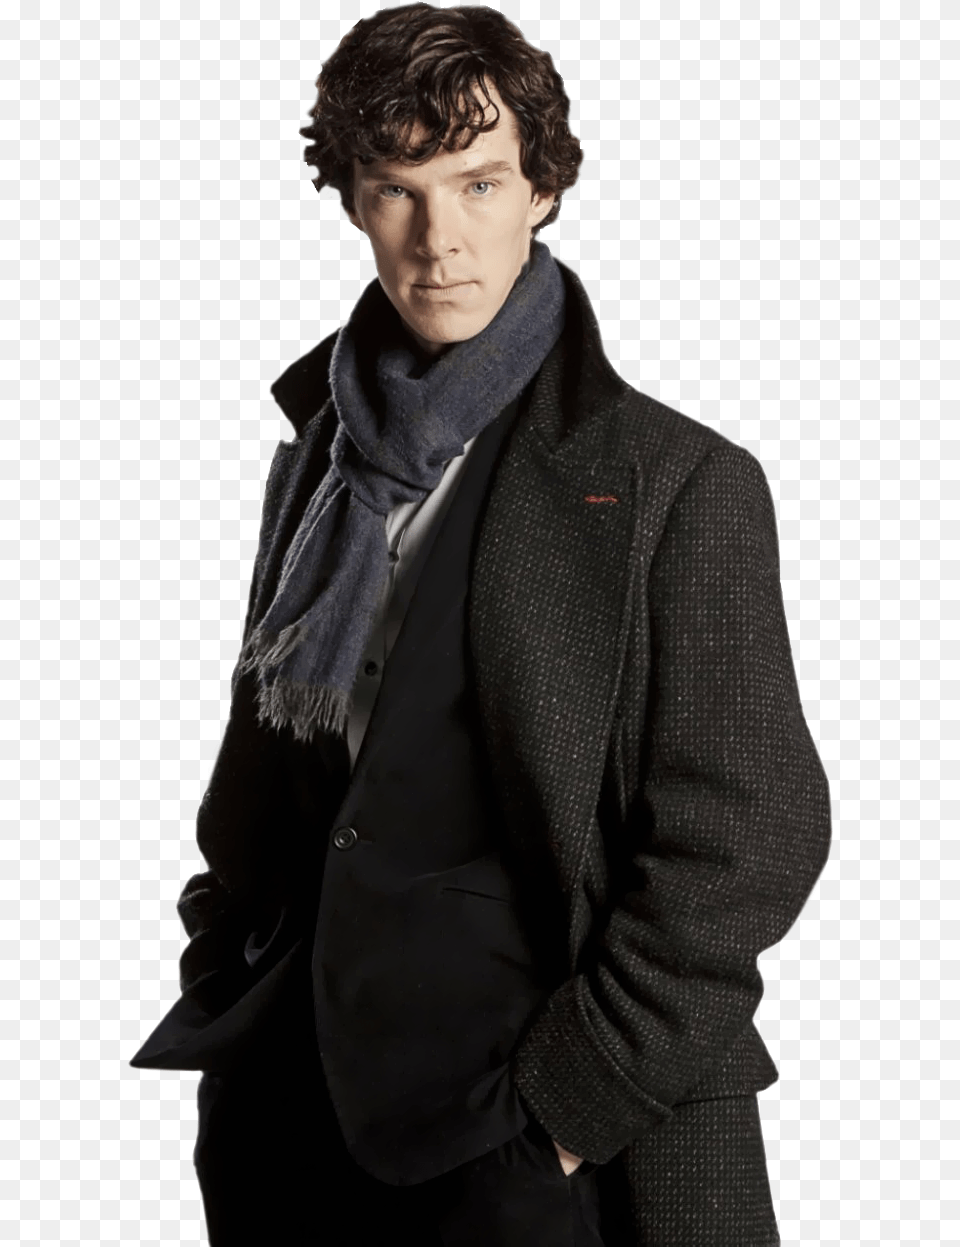 Sherlock Transparent Bbc, Jacket, Clothing, Coat, Suit Png Image